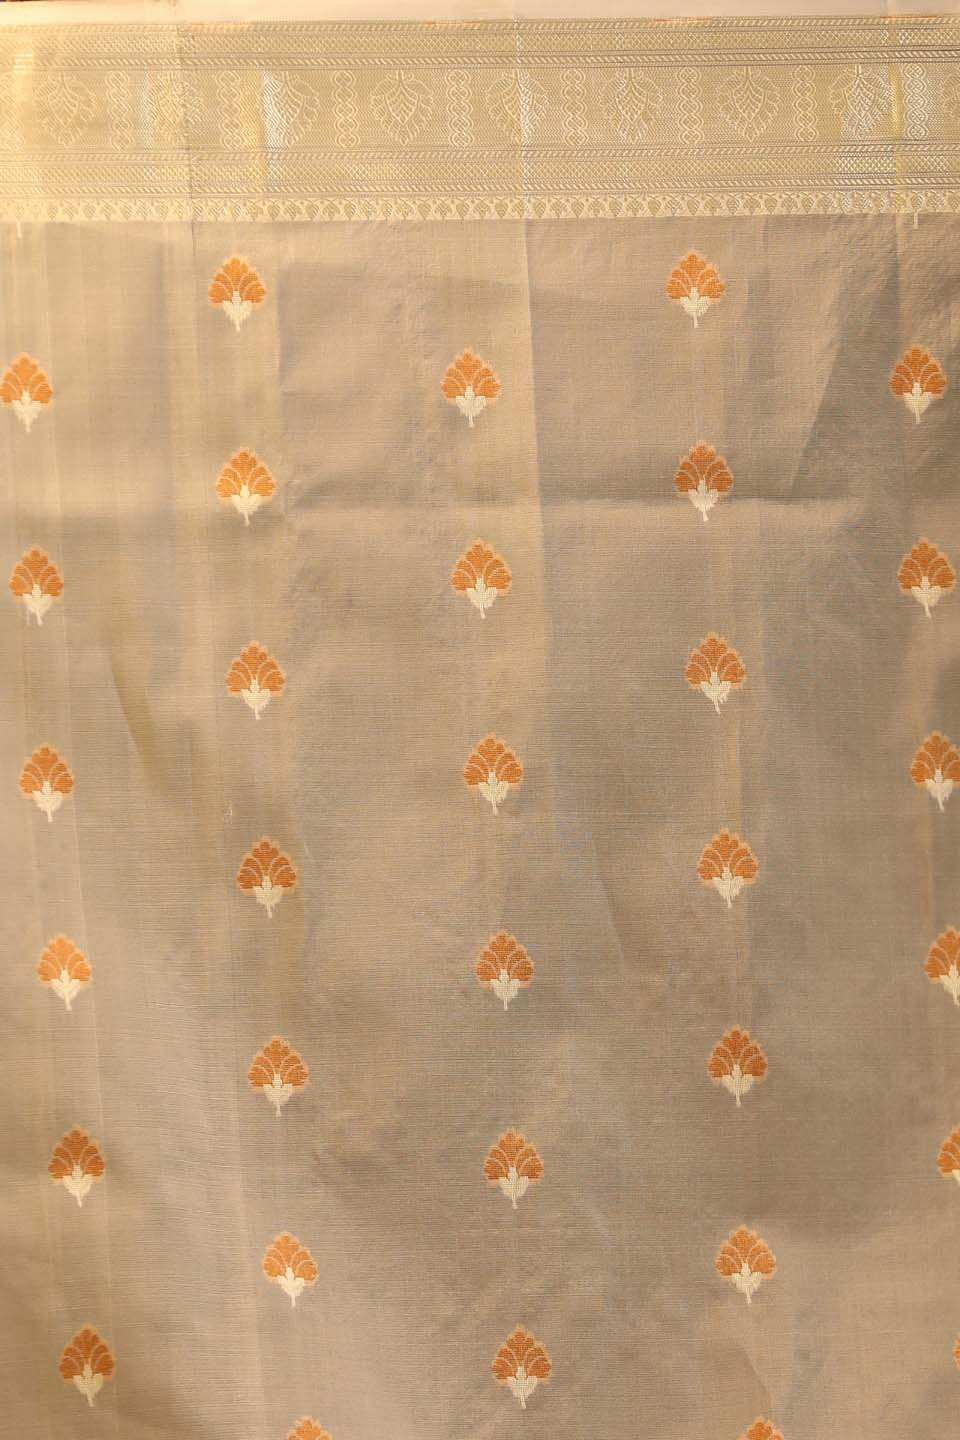 Indethnic Banarasi White Ethnic Motifs Woven Design Traditional Wear Saree - Saree Detail View